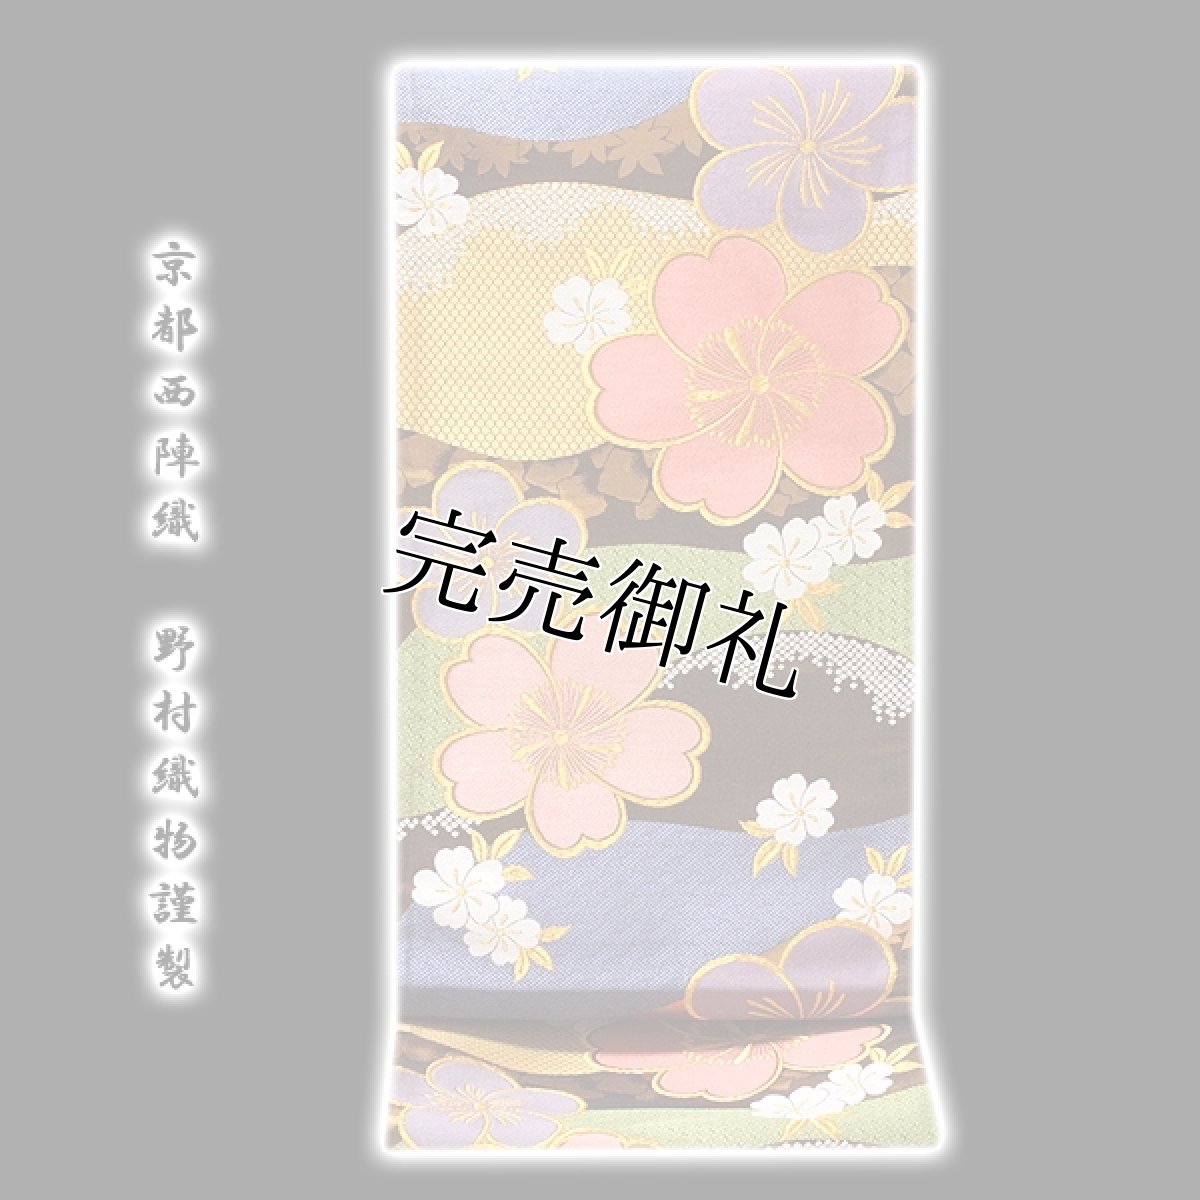 画像1: ■「京都西陣織-野村織物謹製」 夢うらら 振袖に最適 正絹 袋帯■ (1)